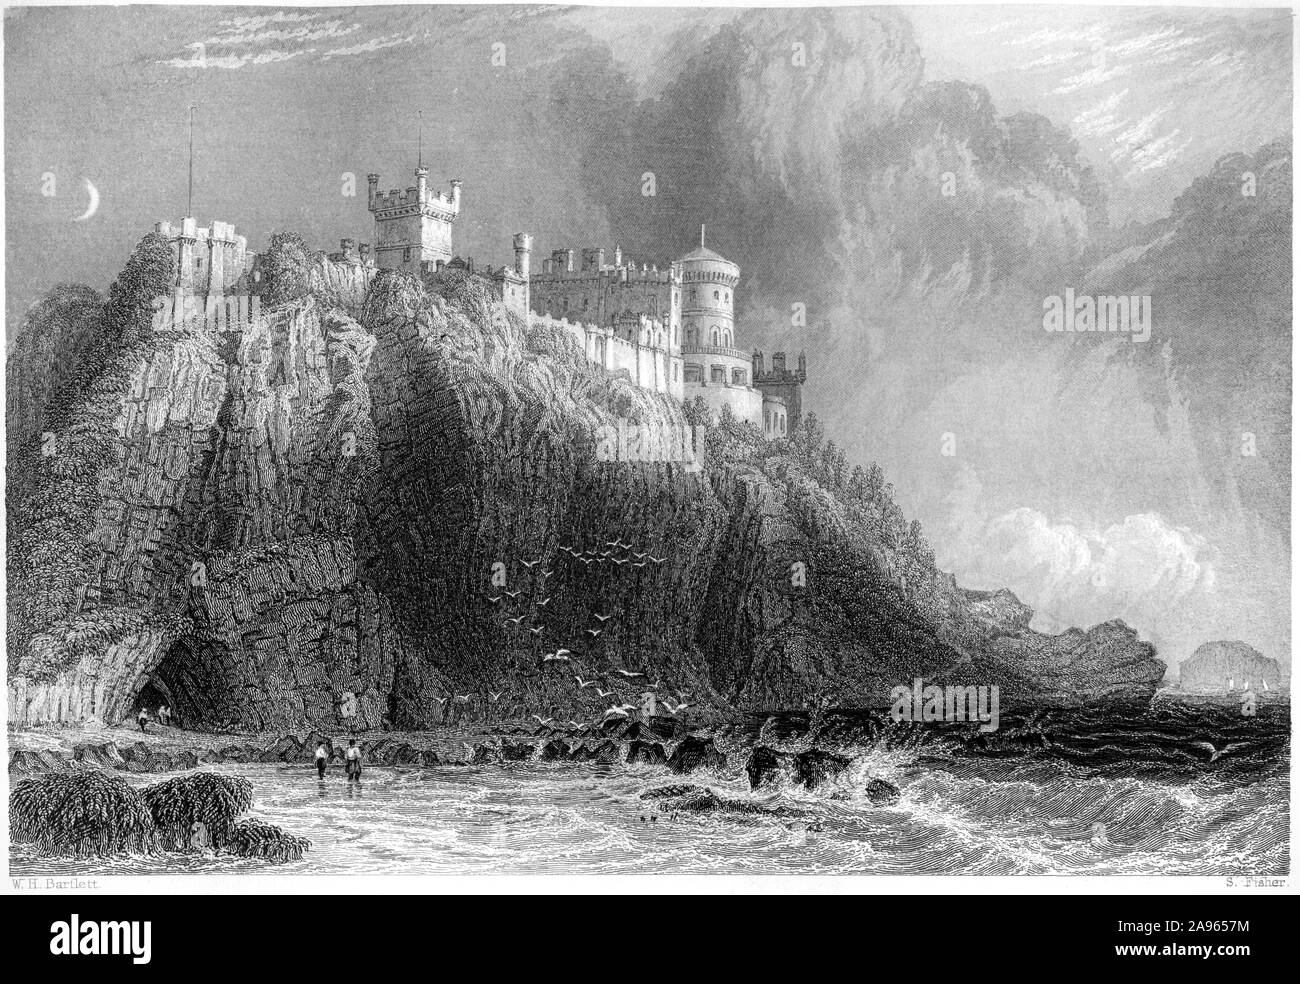 Ein Stich von Colzean (Culzean) Castle, Ayrshire, Schottland, UK, gescannt mit hoher Auflösung aus einem Buch, das 1859 gedruckt wurde. Für urheberrechtlich frei gehalten. Stockfoto